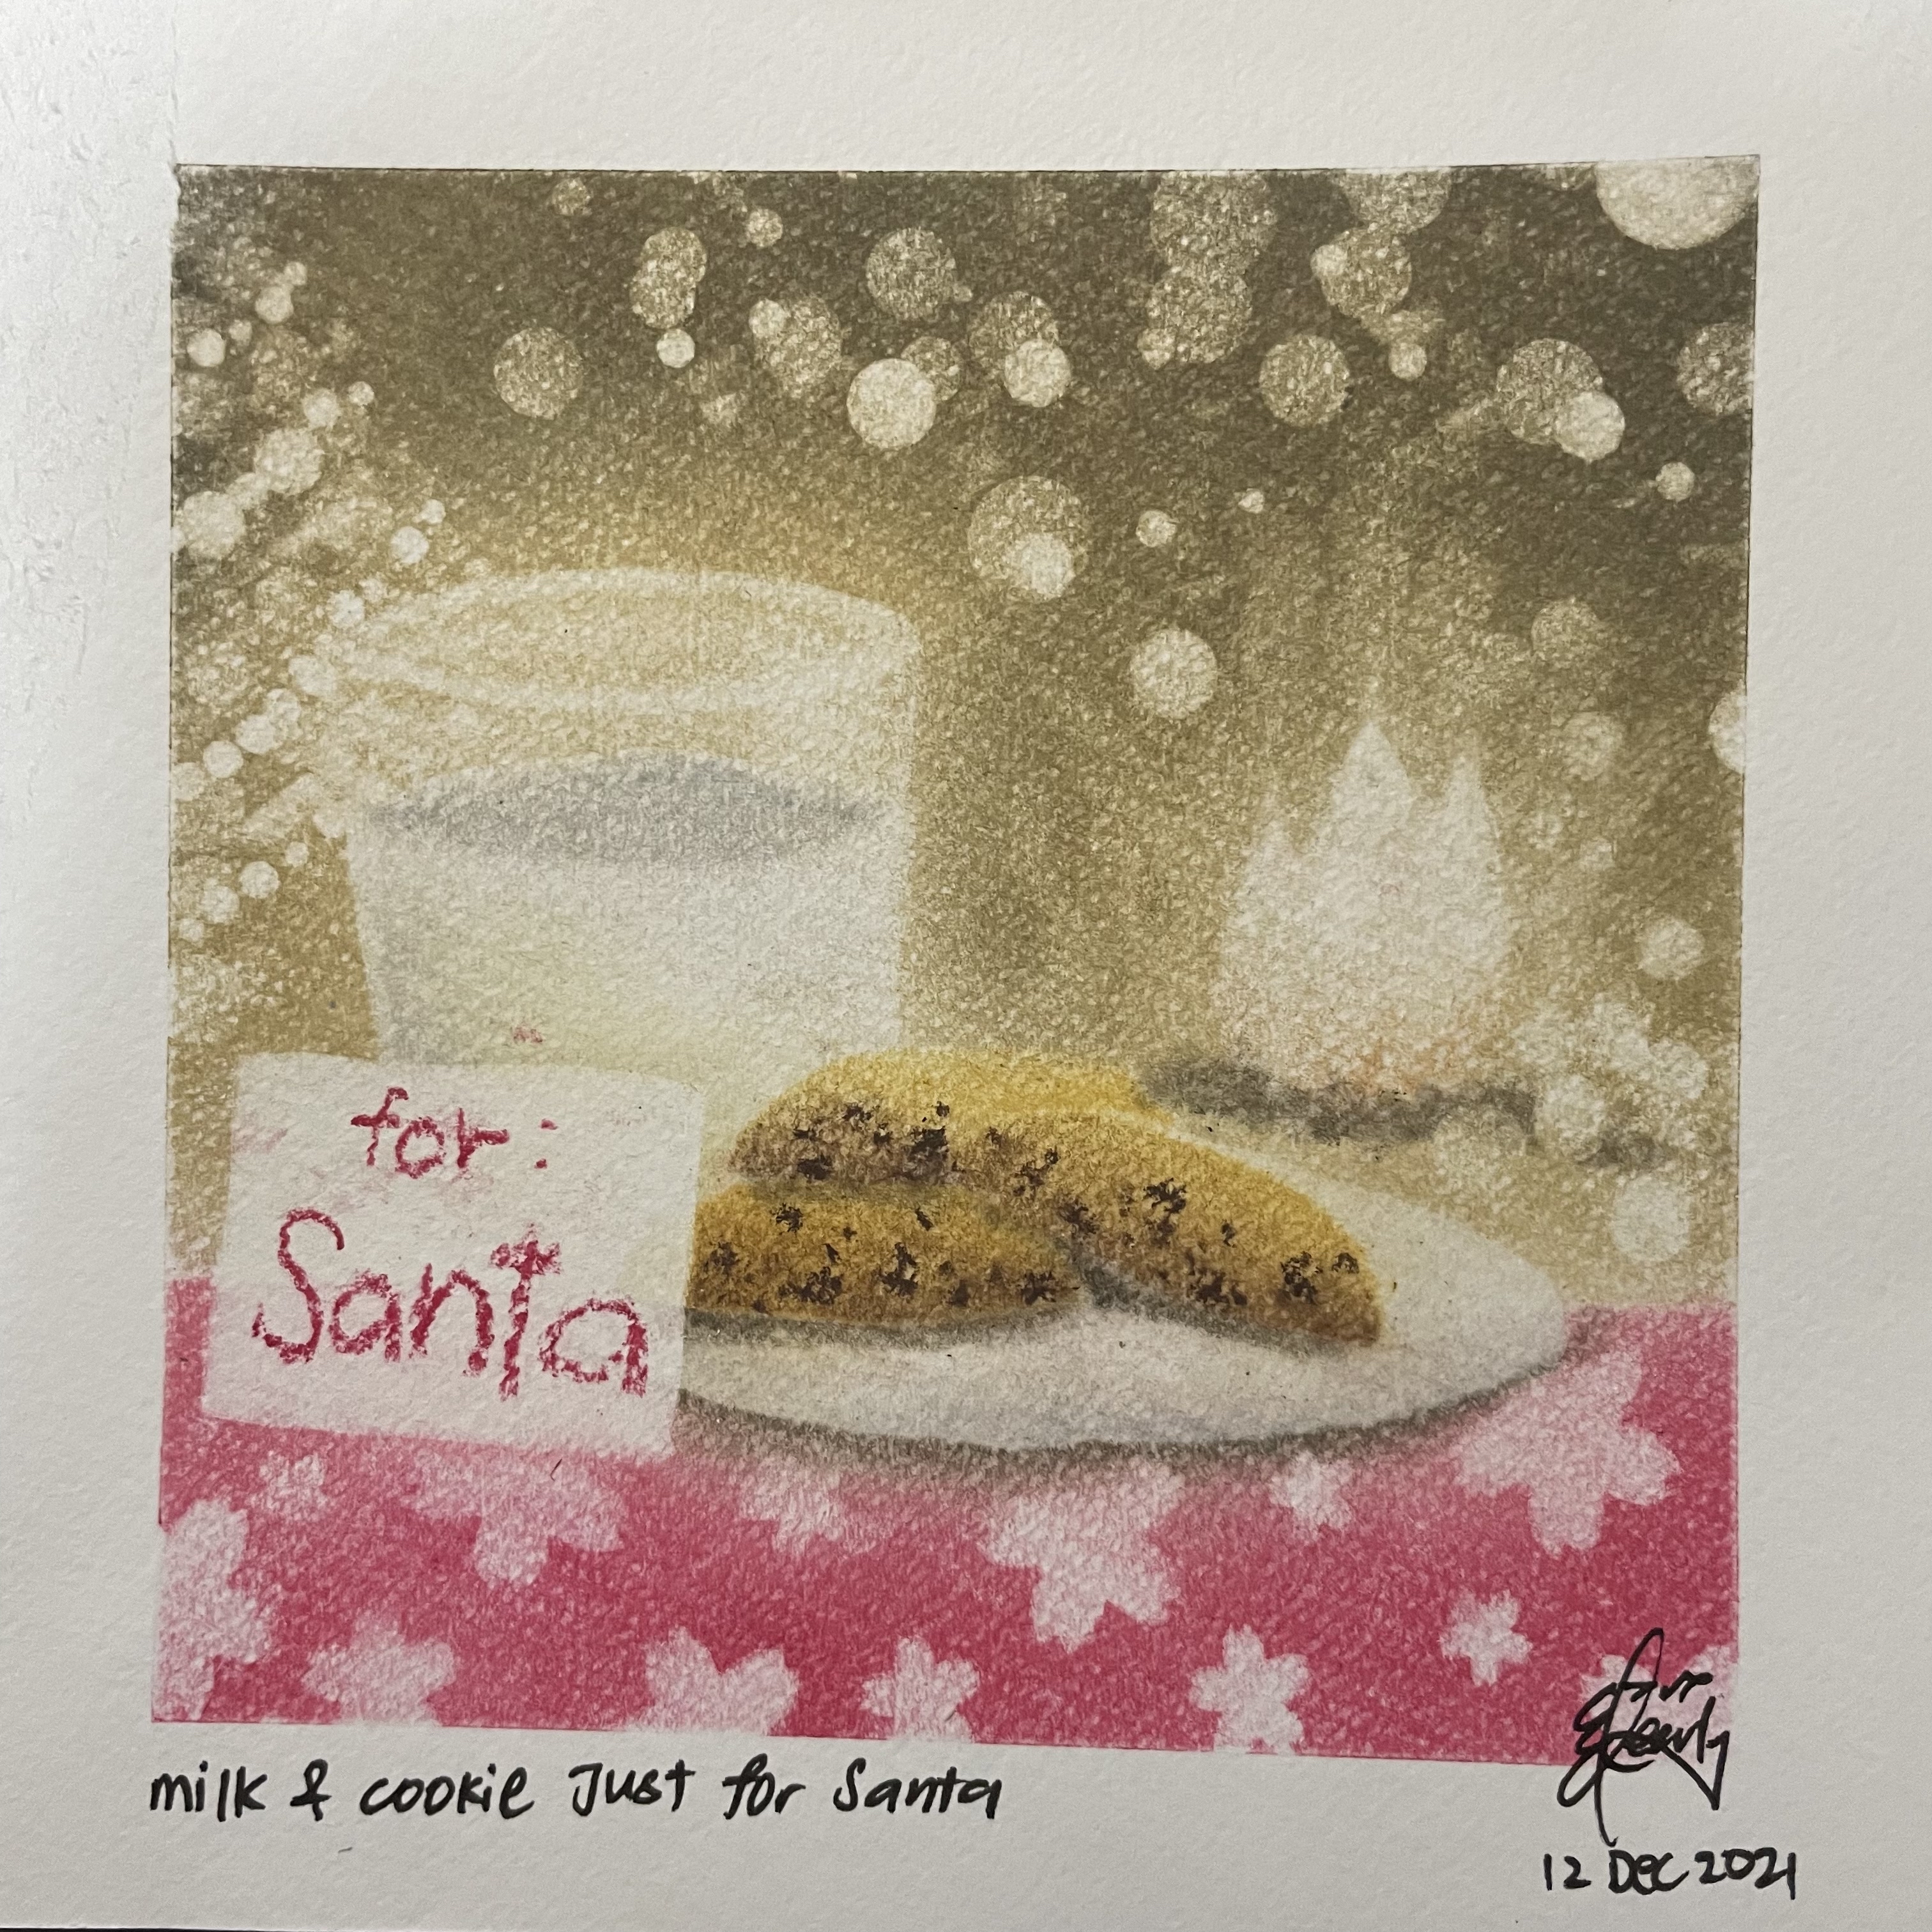 Milk n cookie for Santa 